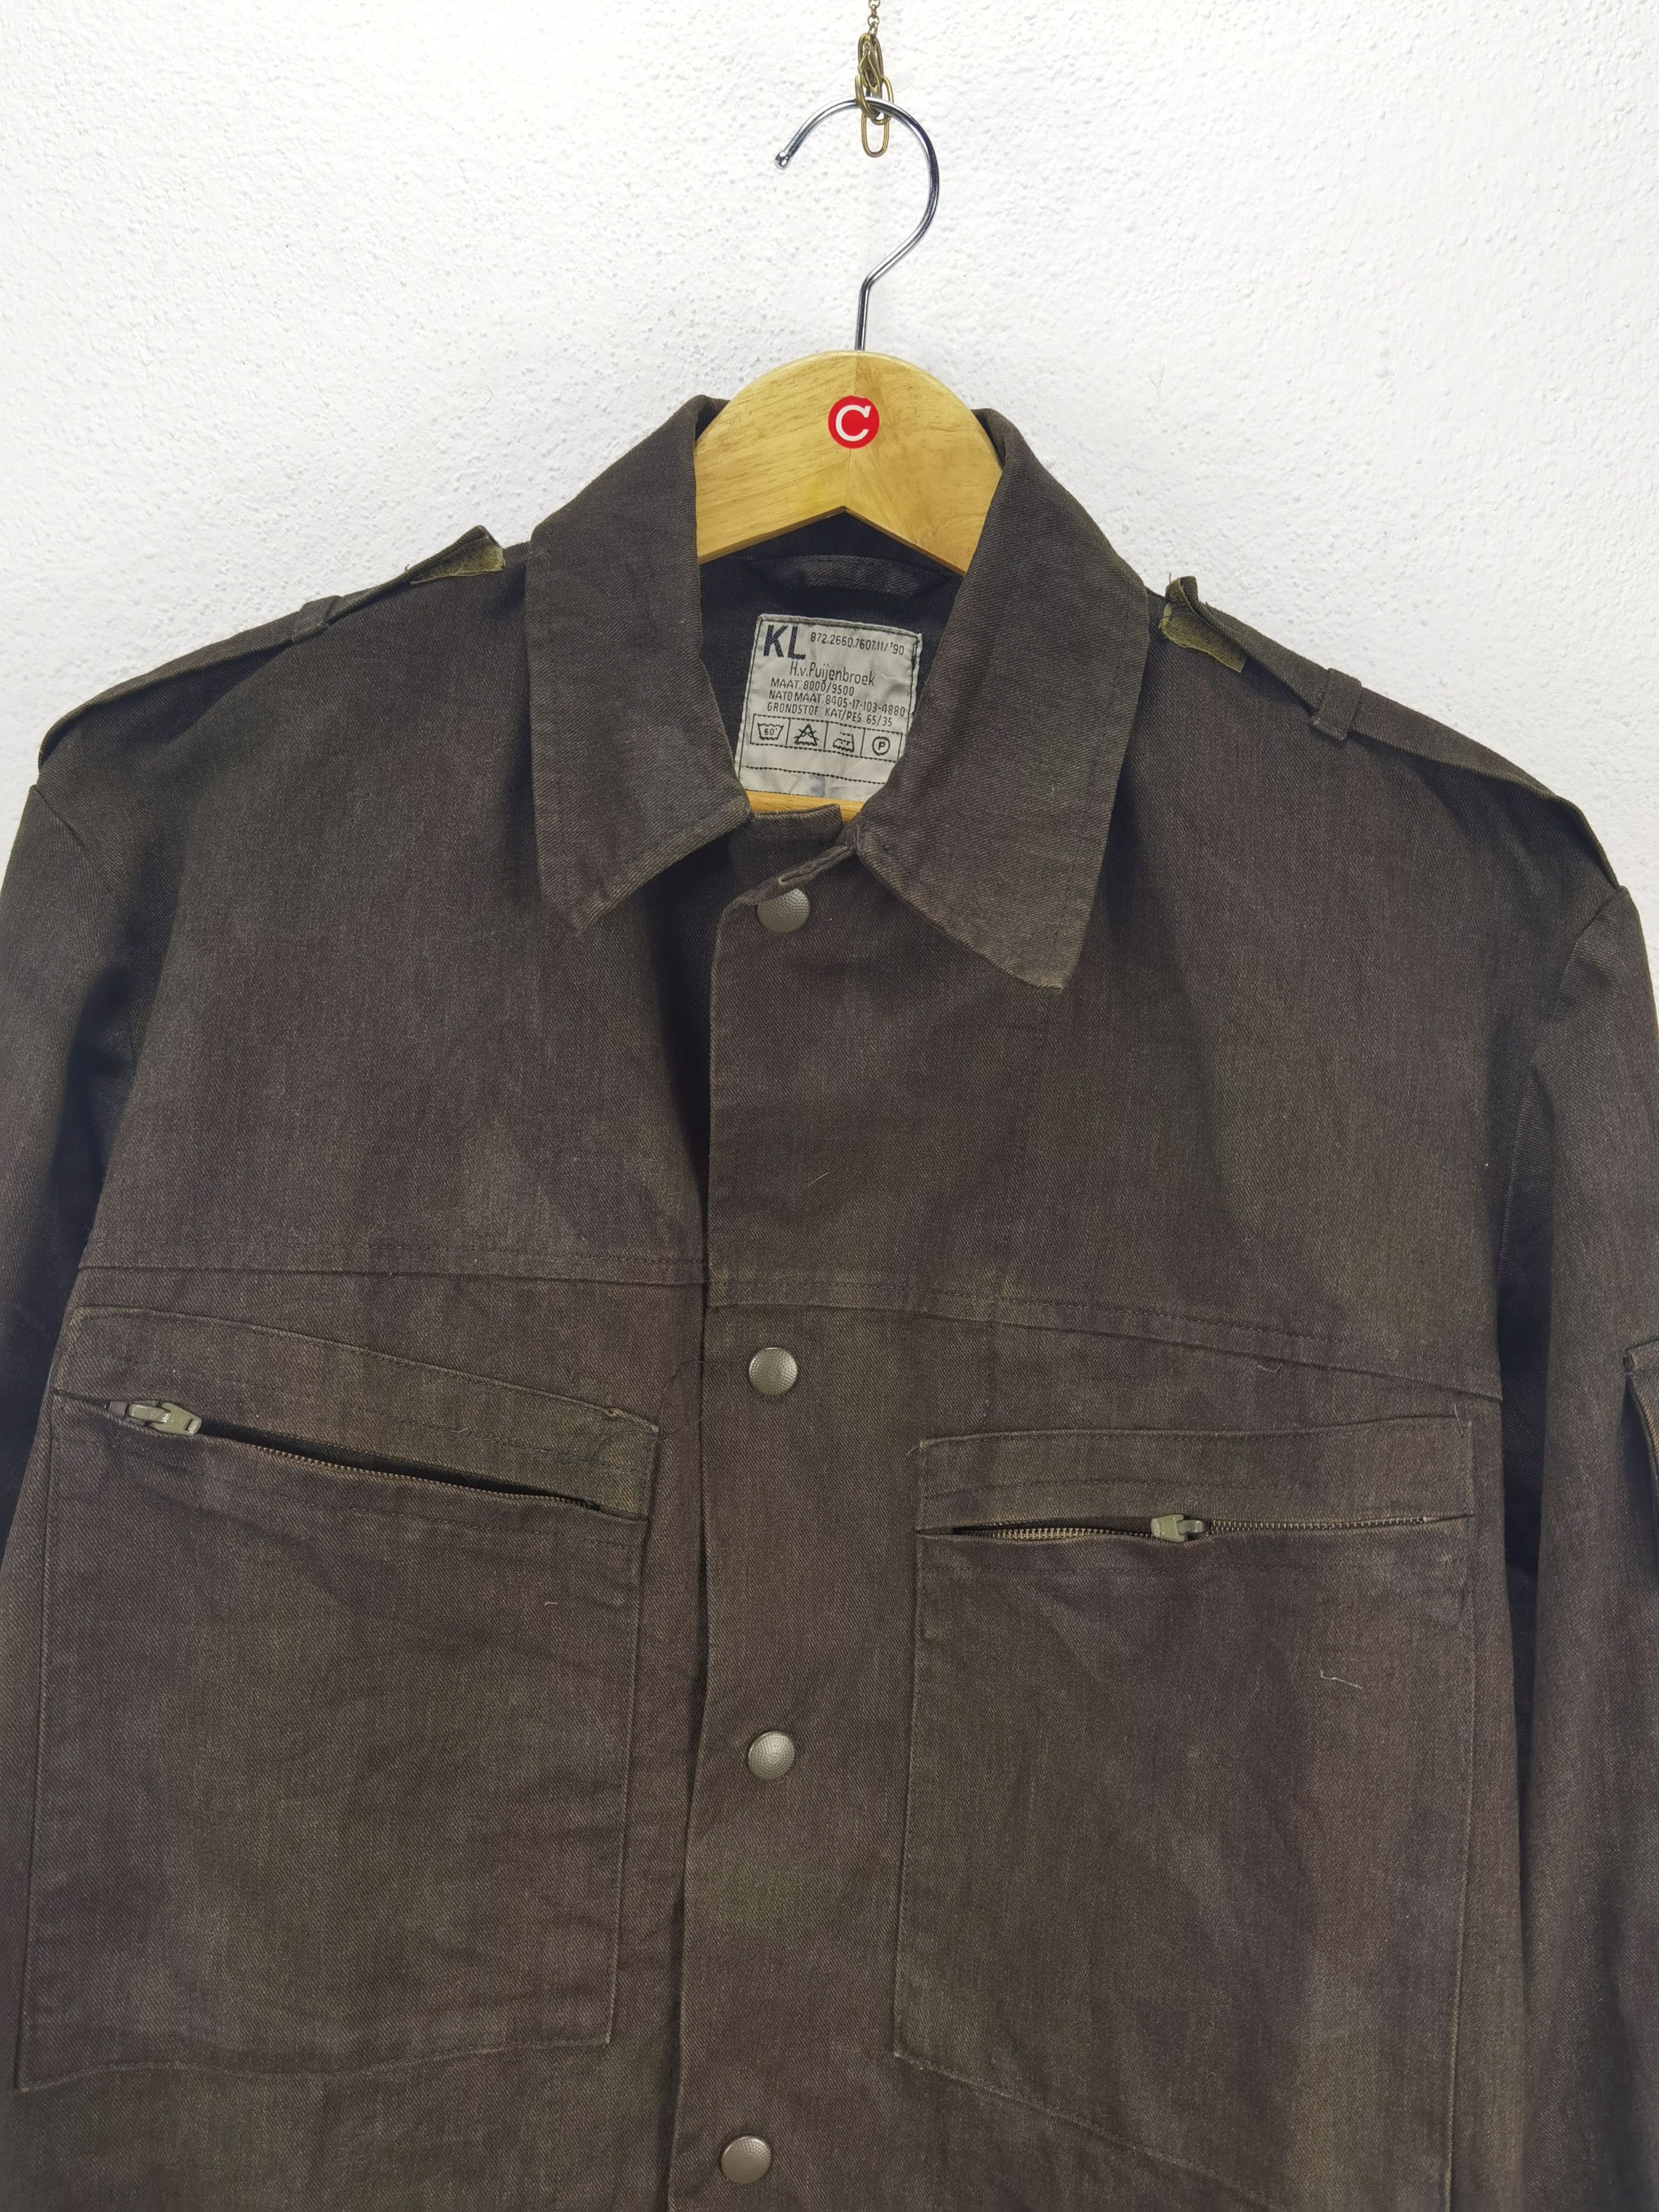 Military 2.8 Vintage KL H.V. Puijenbroek Dutch Jacket Camouflage | Grailed